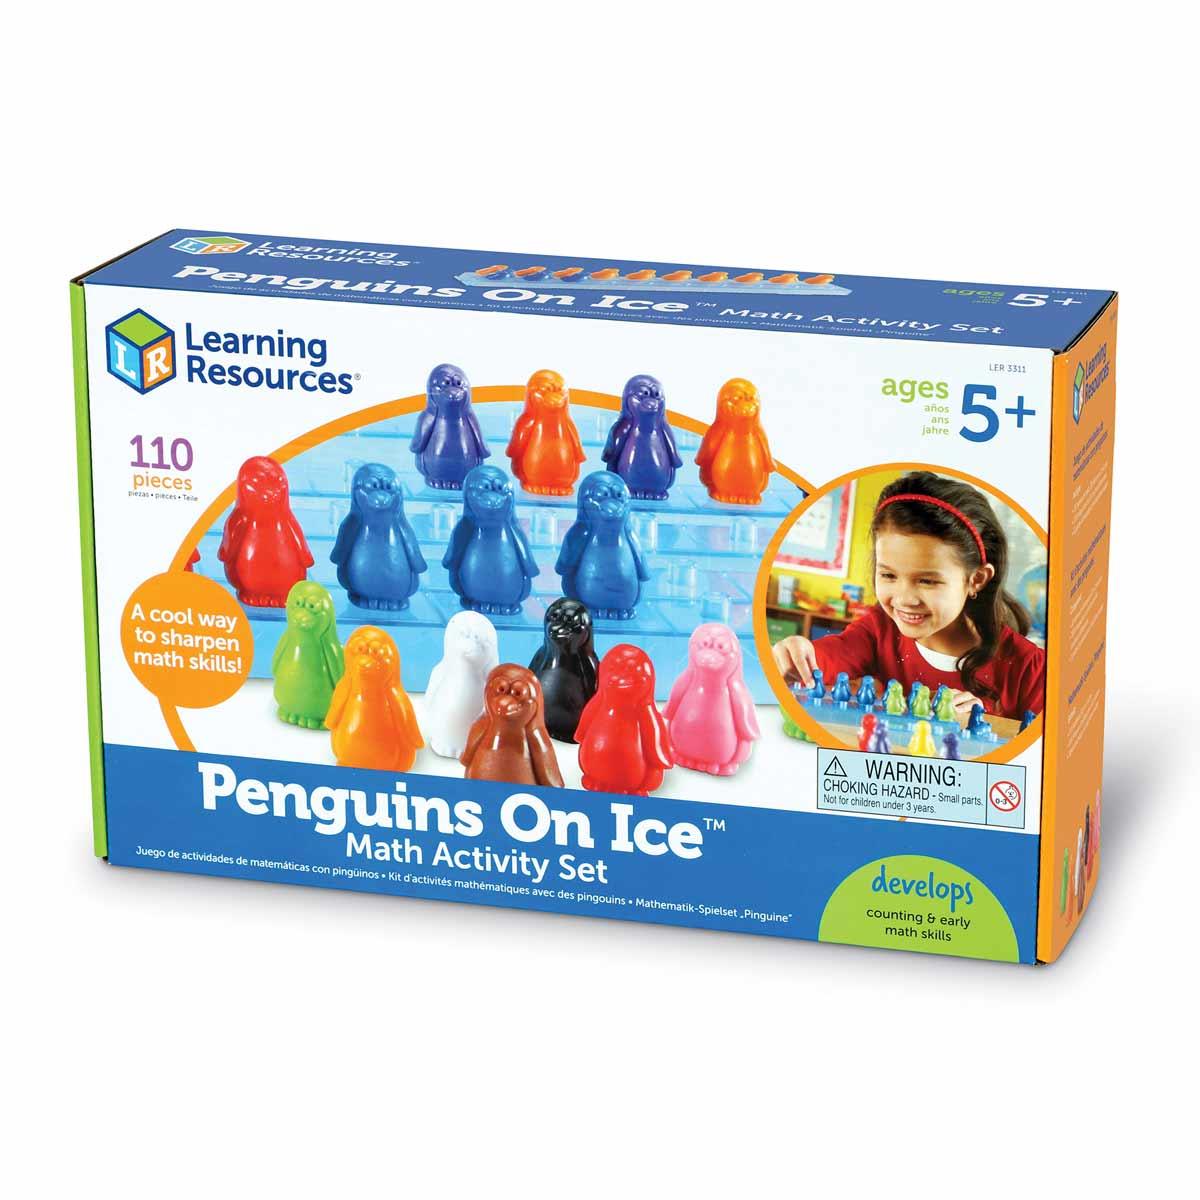 Penguins on Ice™ Math Activity Set - MoonyBoon